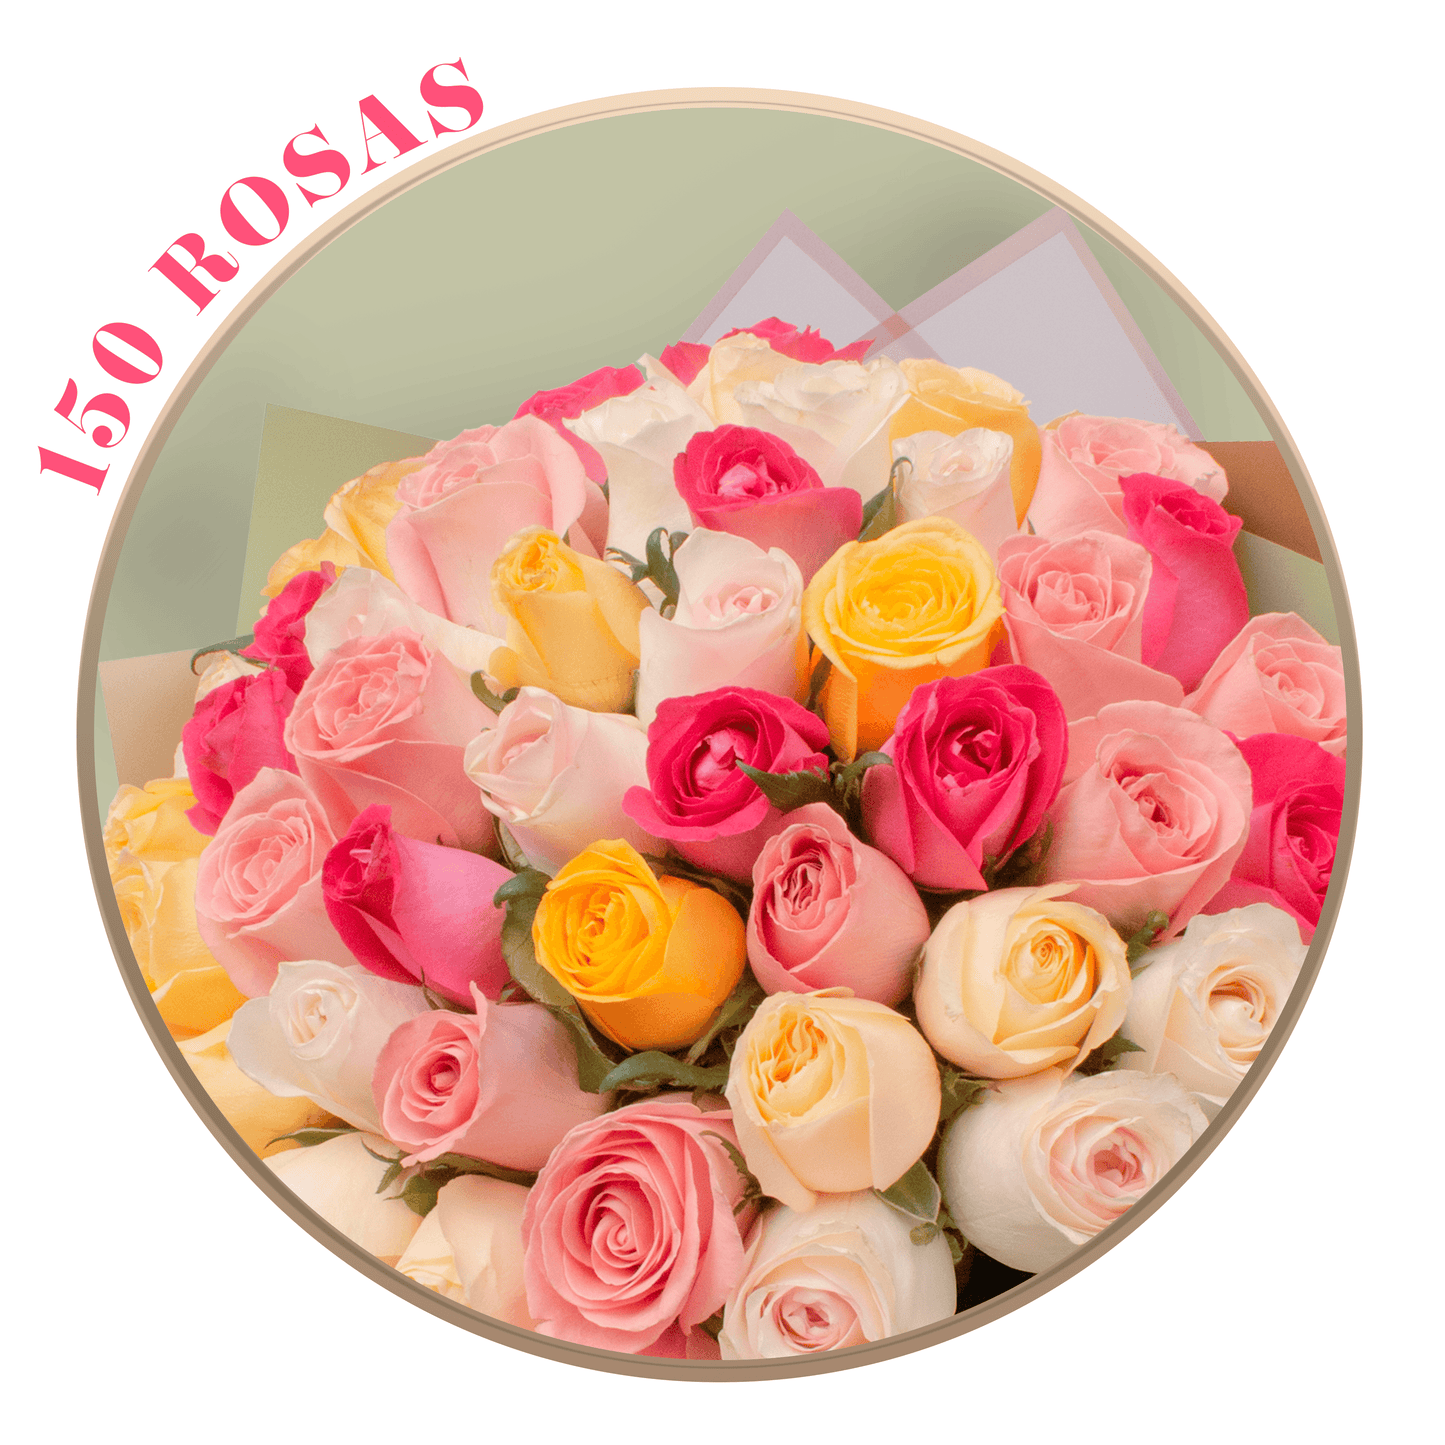 Ramo de Rosas Mixtas (Náutica, Fucsia Topaz, Amarilla, Peach Avalanche, Coral y Hermosa), presentación de 50, 100 o 150 rosas